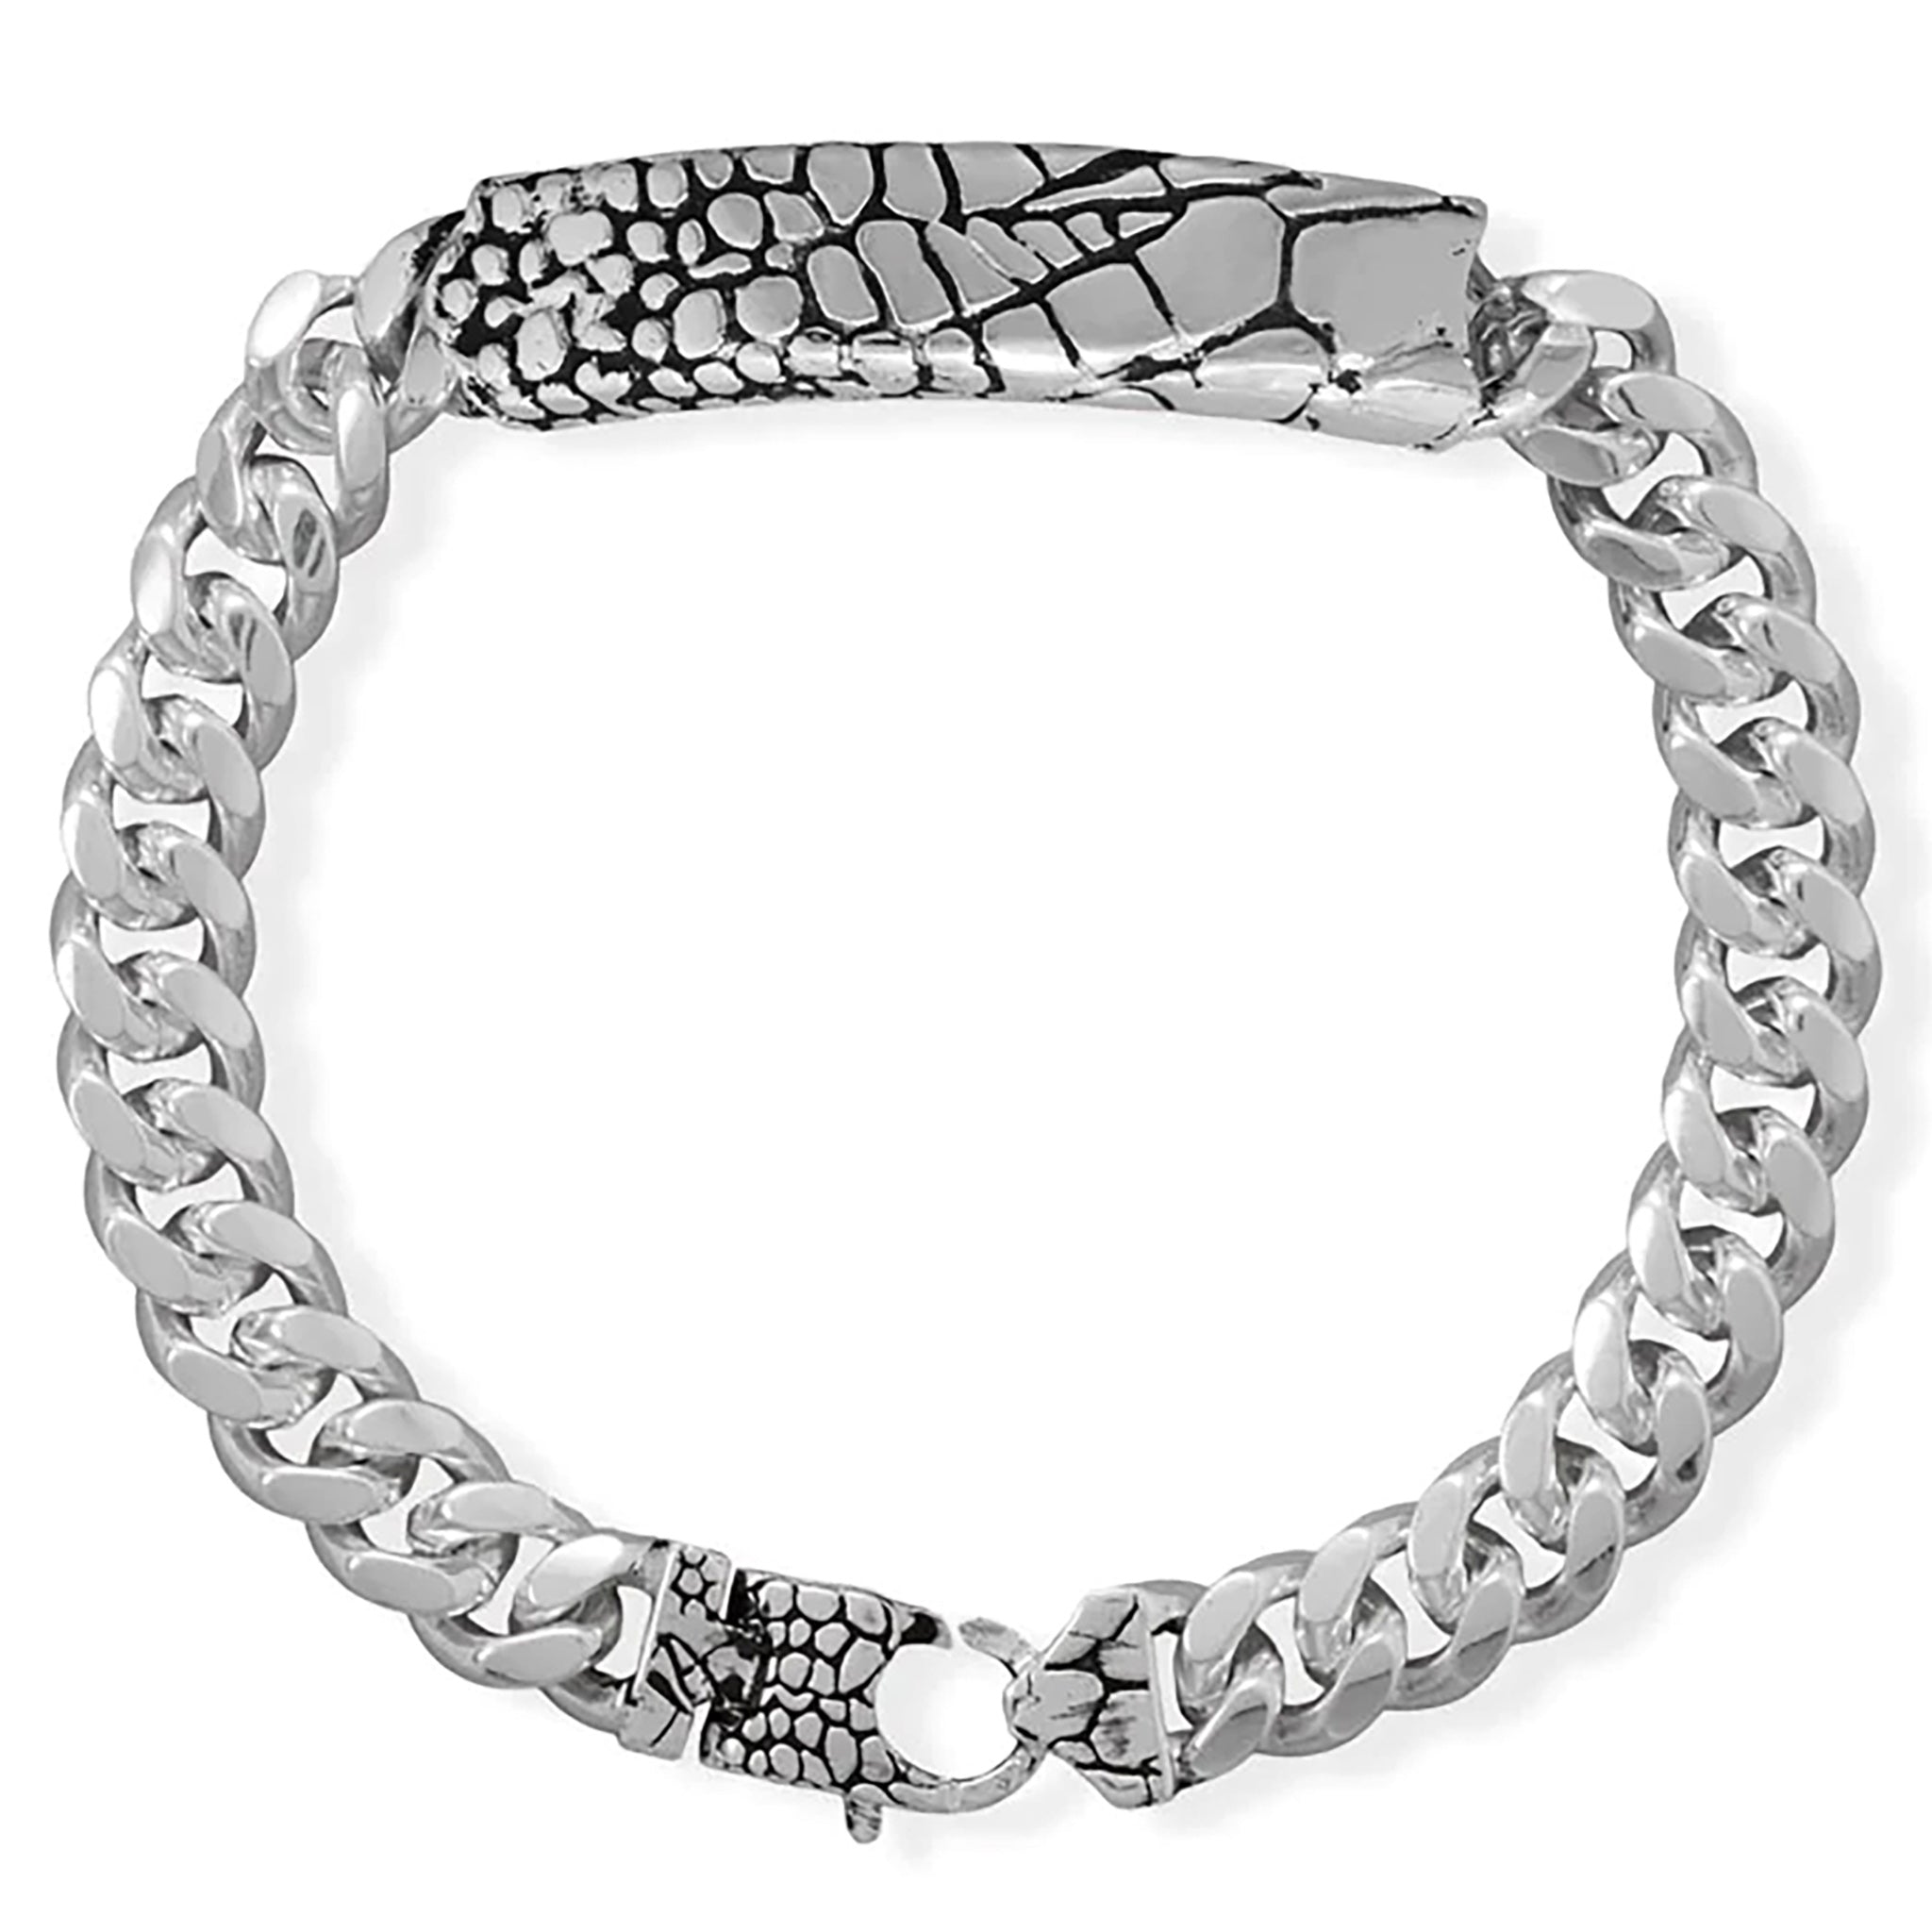 Lizard Pattern Curb Chain Bracelet